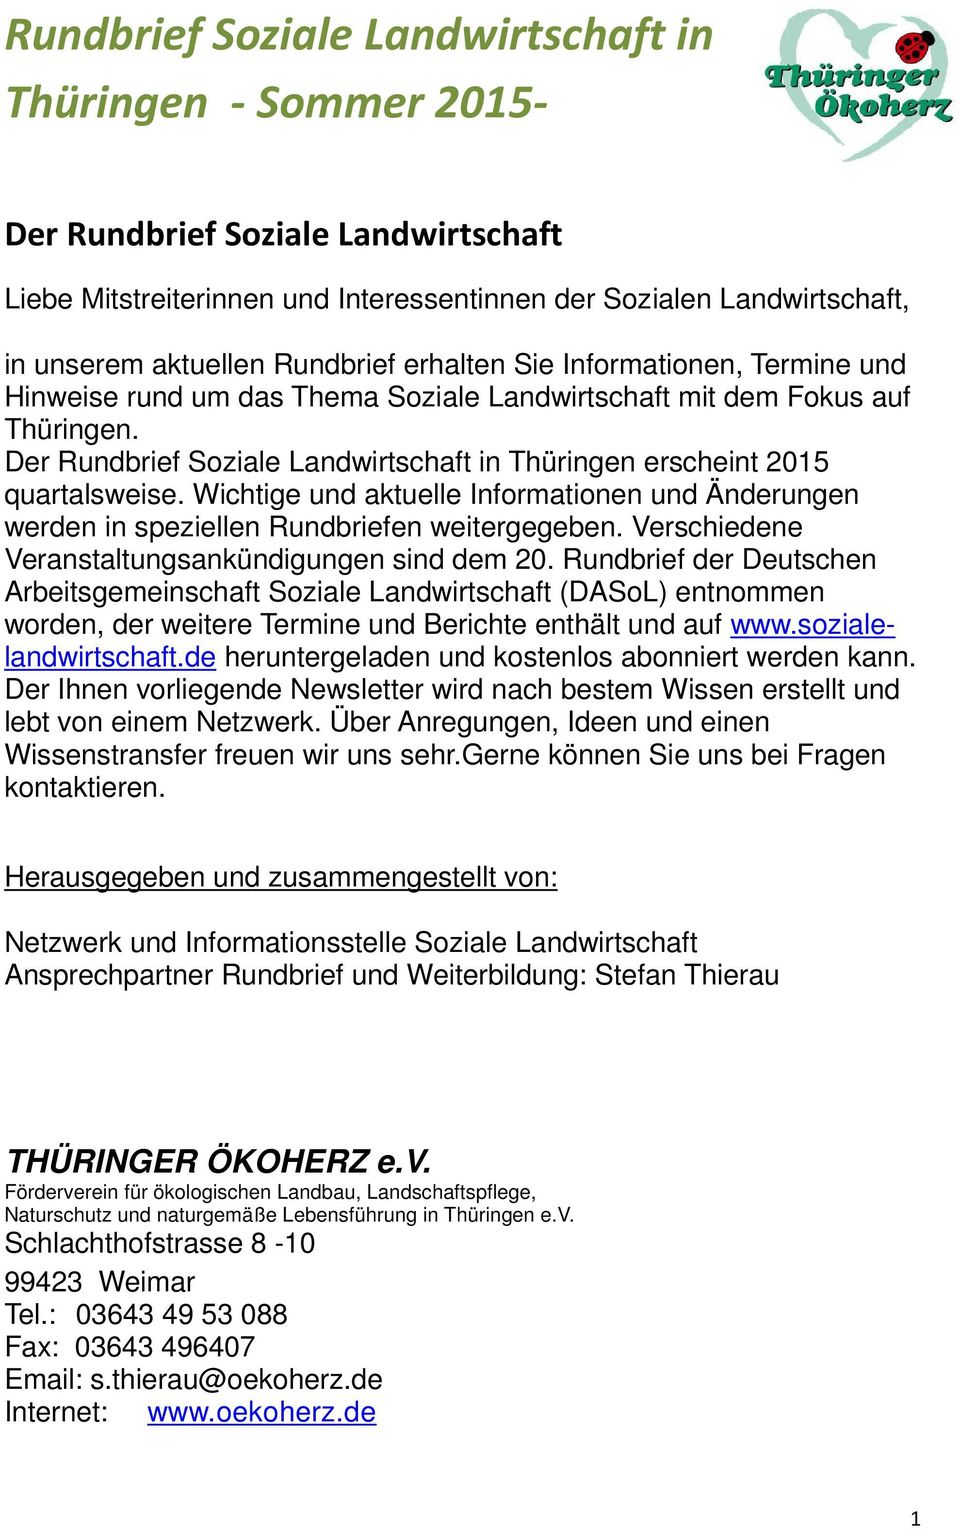 Der Rundbrief Soziale Landwirtschaft in Thüringen erscheint 2015 quartalsweise. Wichtige und aktuelle Informationen und Änderungen werden in speziellen Rundbriefen weitergegeben.